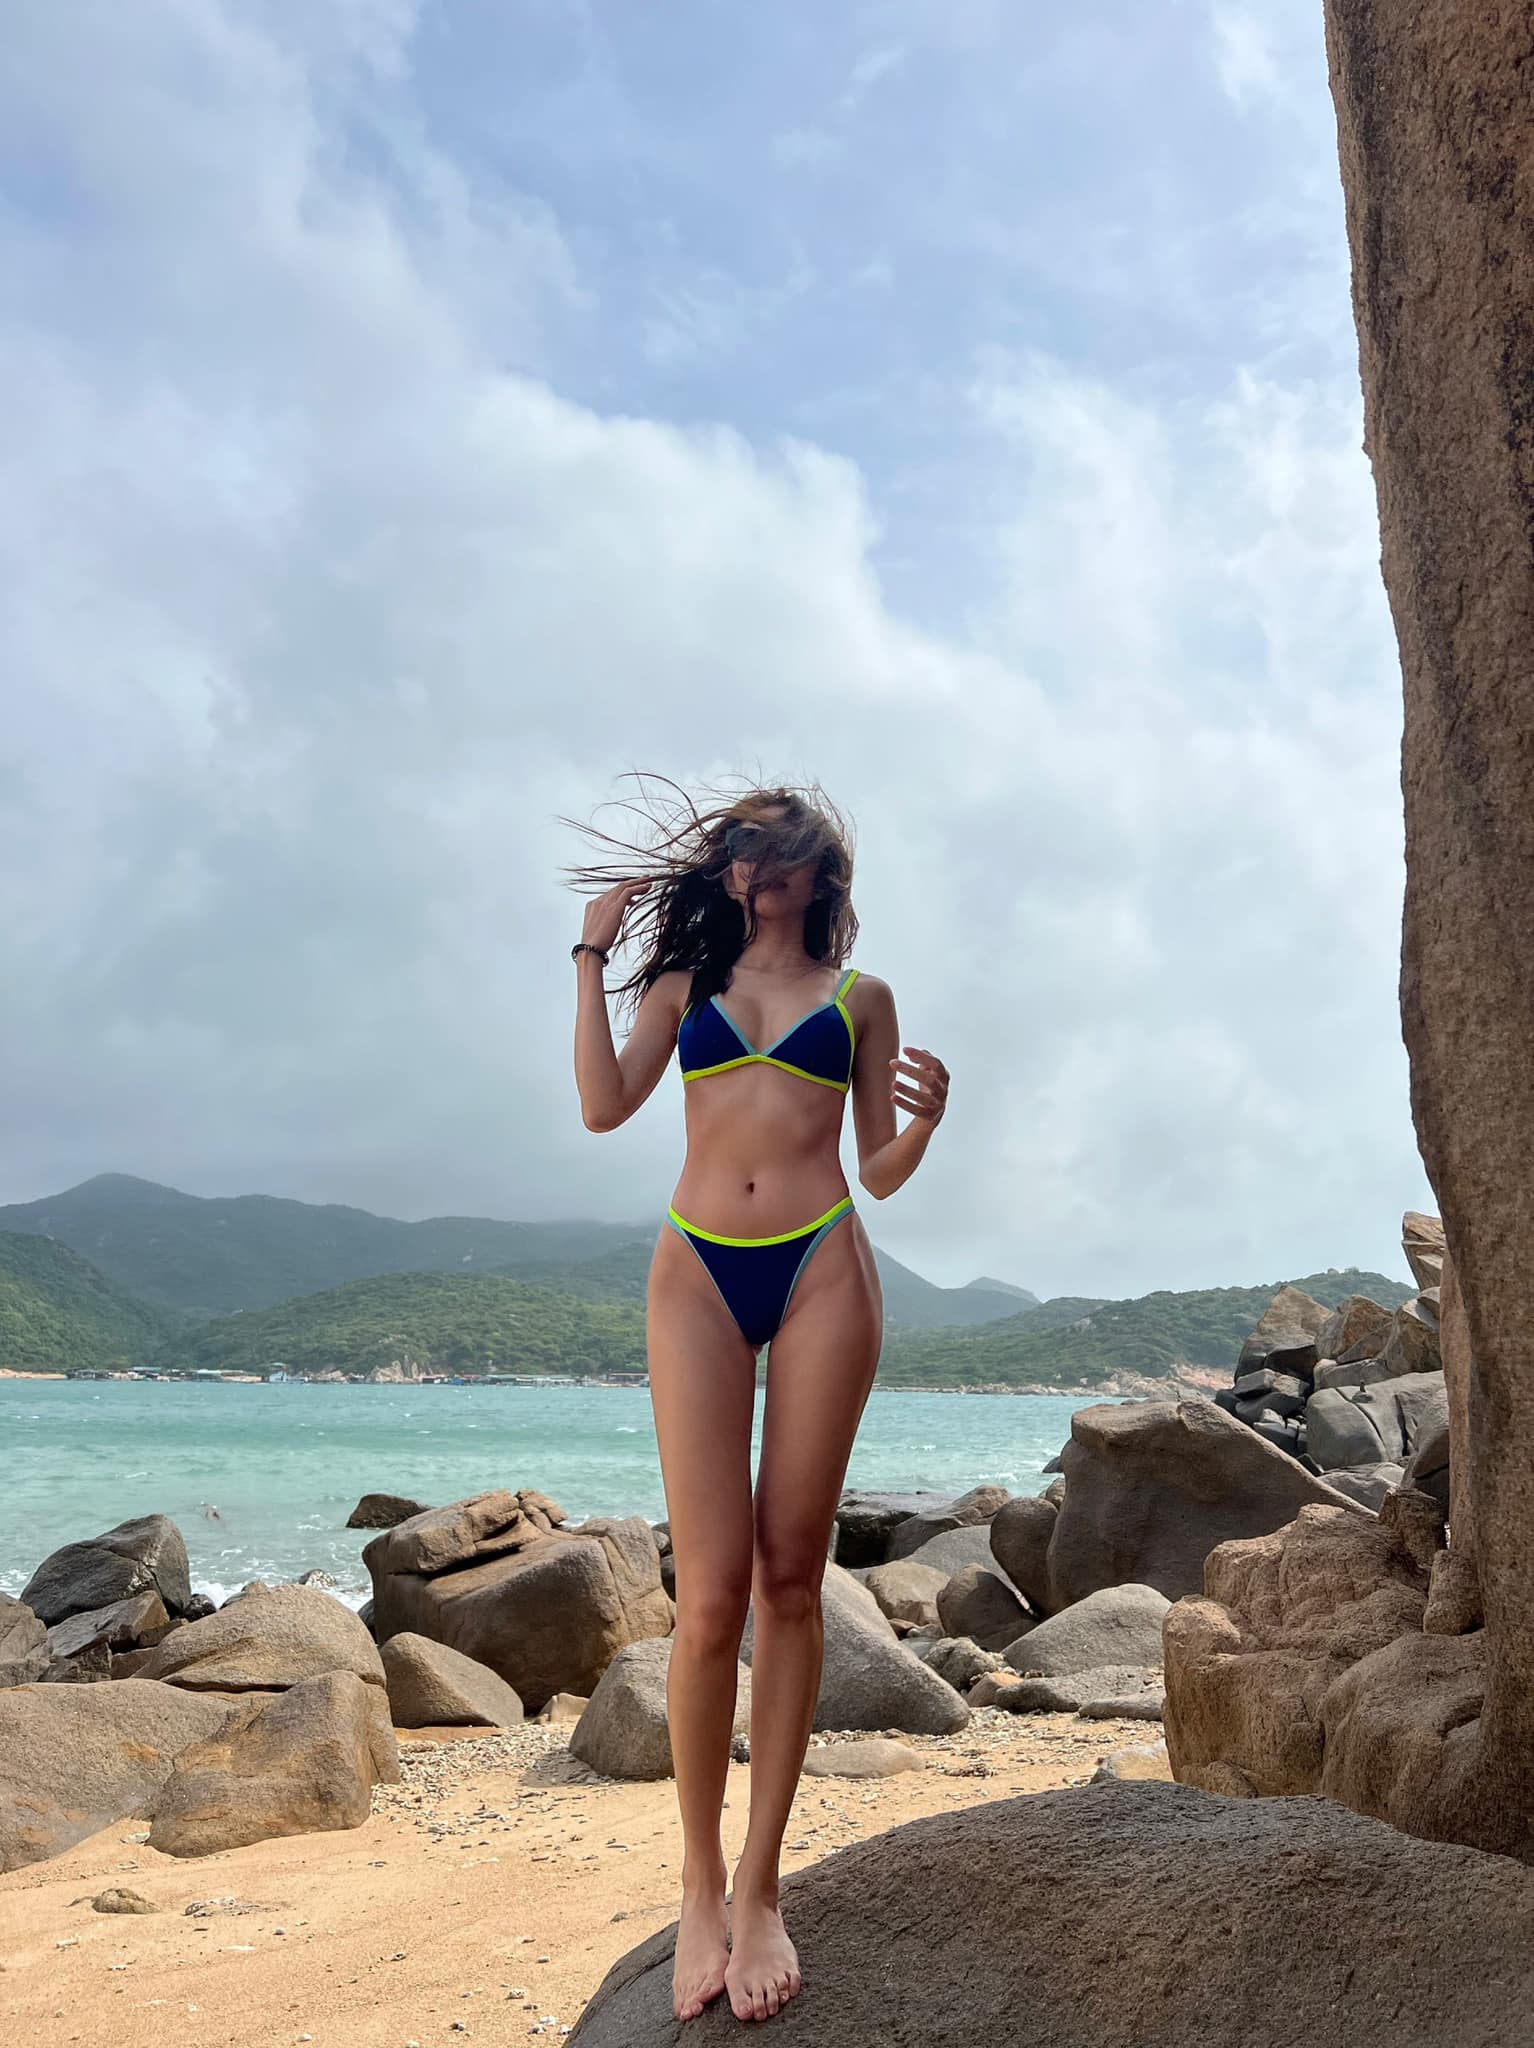 1 sự thật khác sau các bức ảnh bikini nóng bỏng của Hoa hậu Thùy Tiên - Ảnh 5.